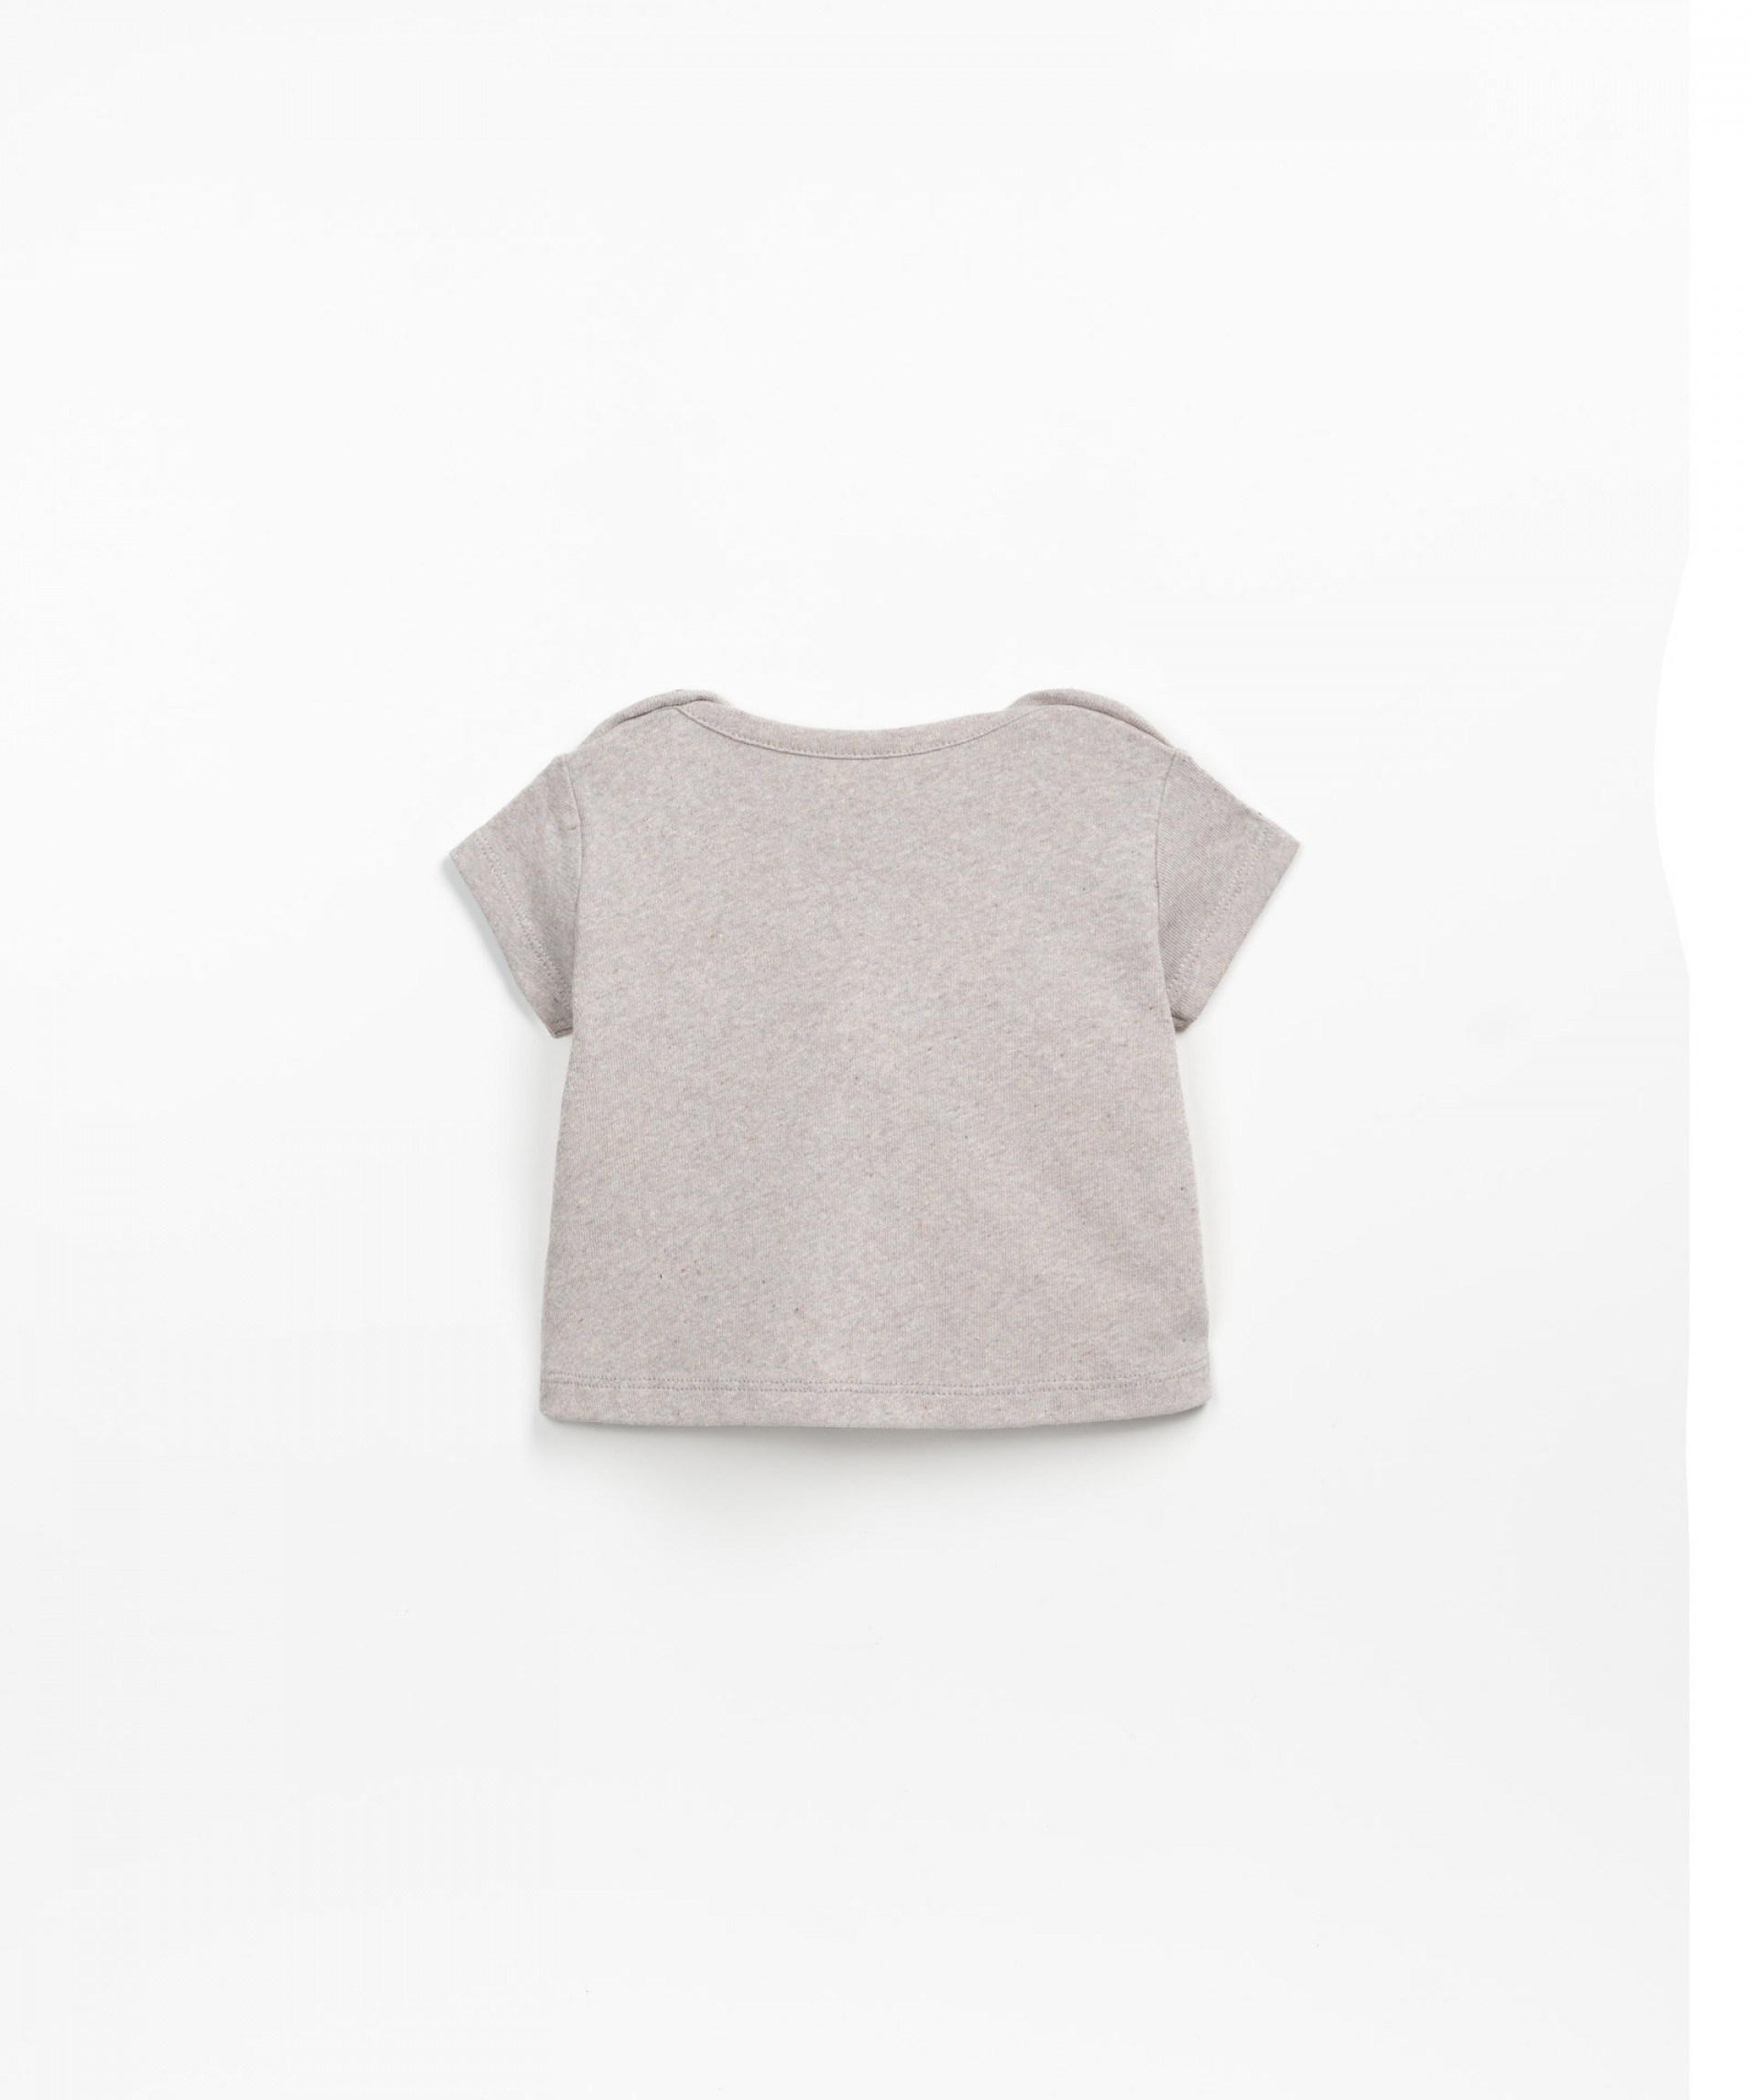 Camiseta con abertura en el hombro | Textile Art